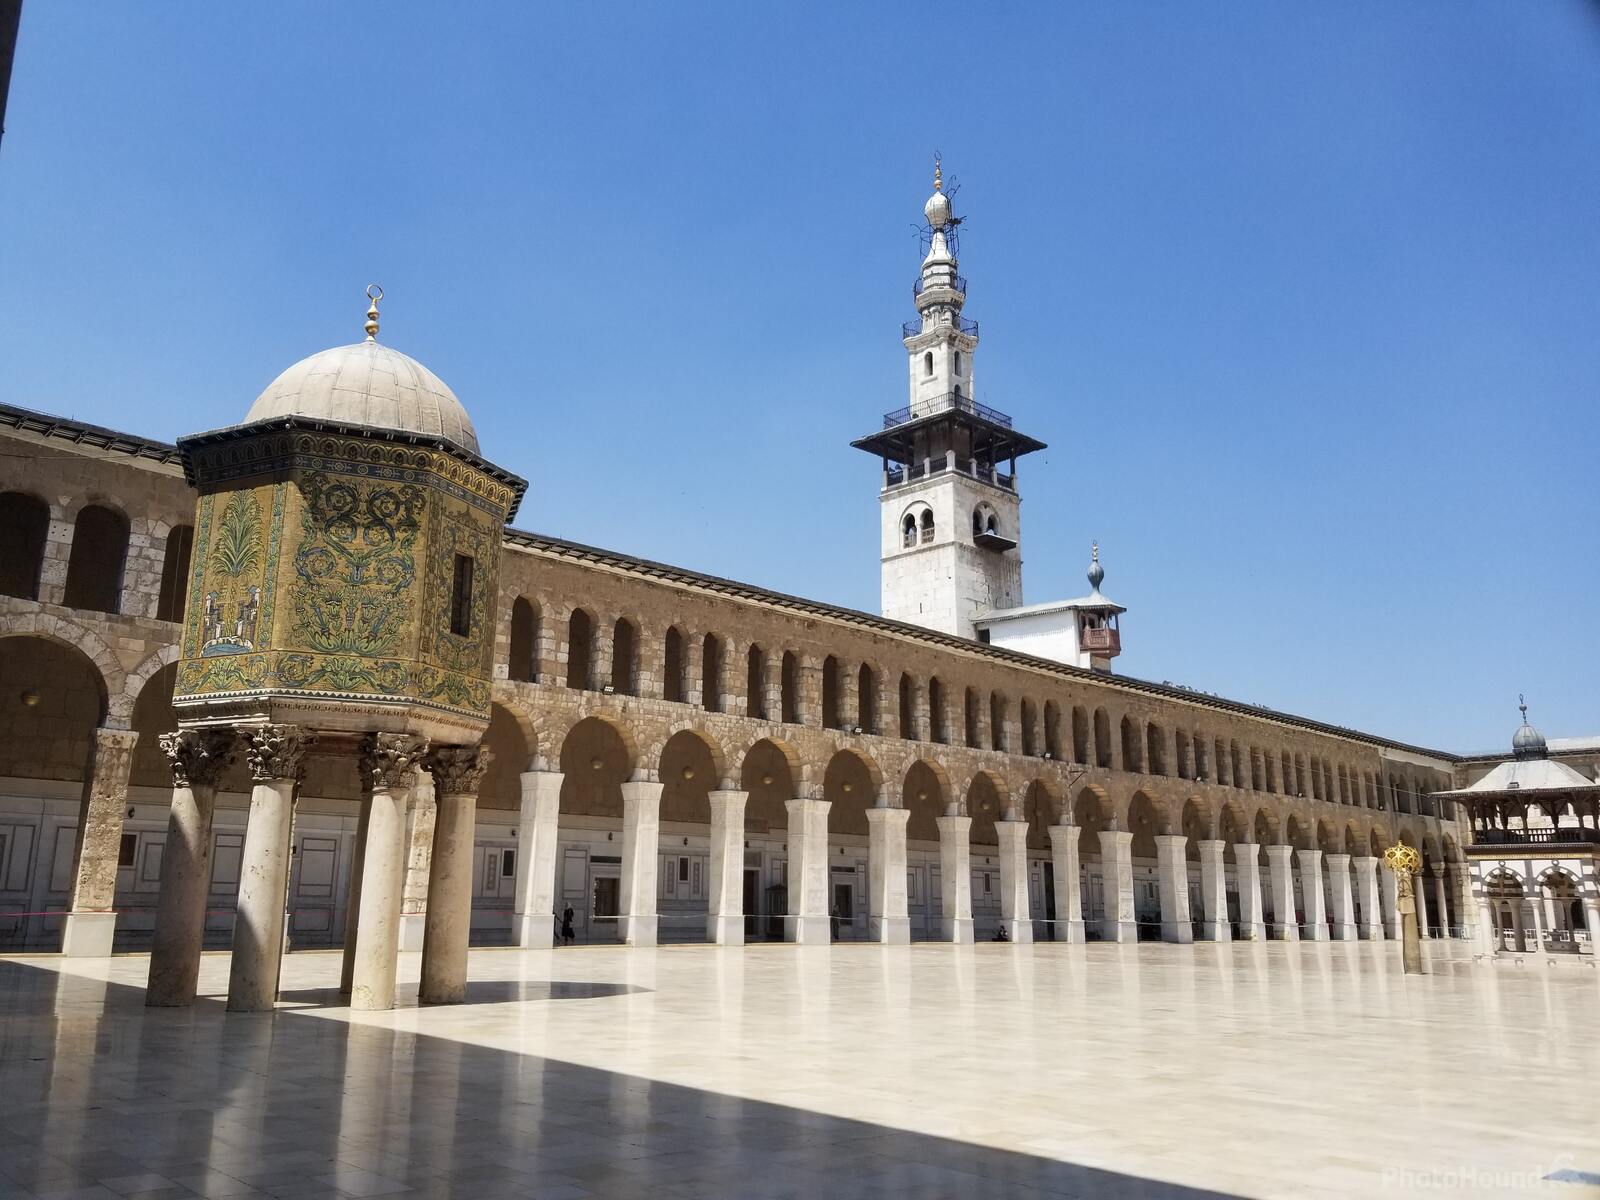 Image of Umayyad Mosque by Team PhotoHound